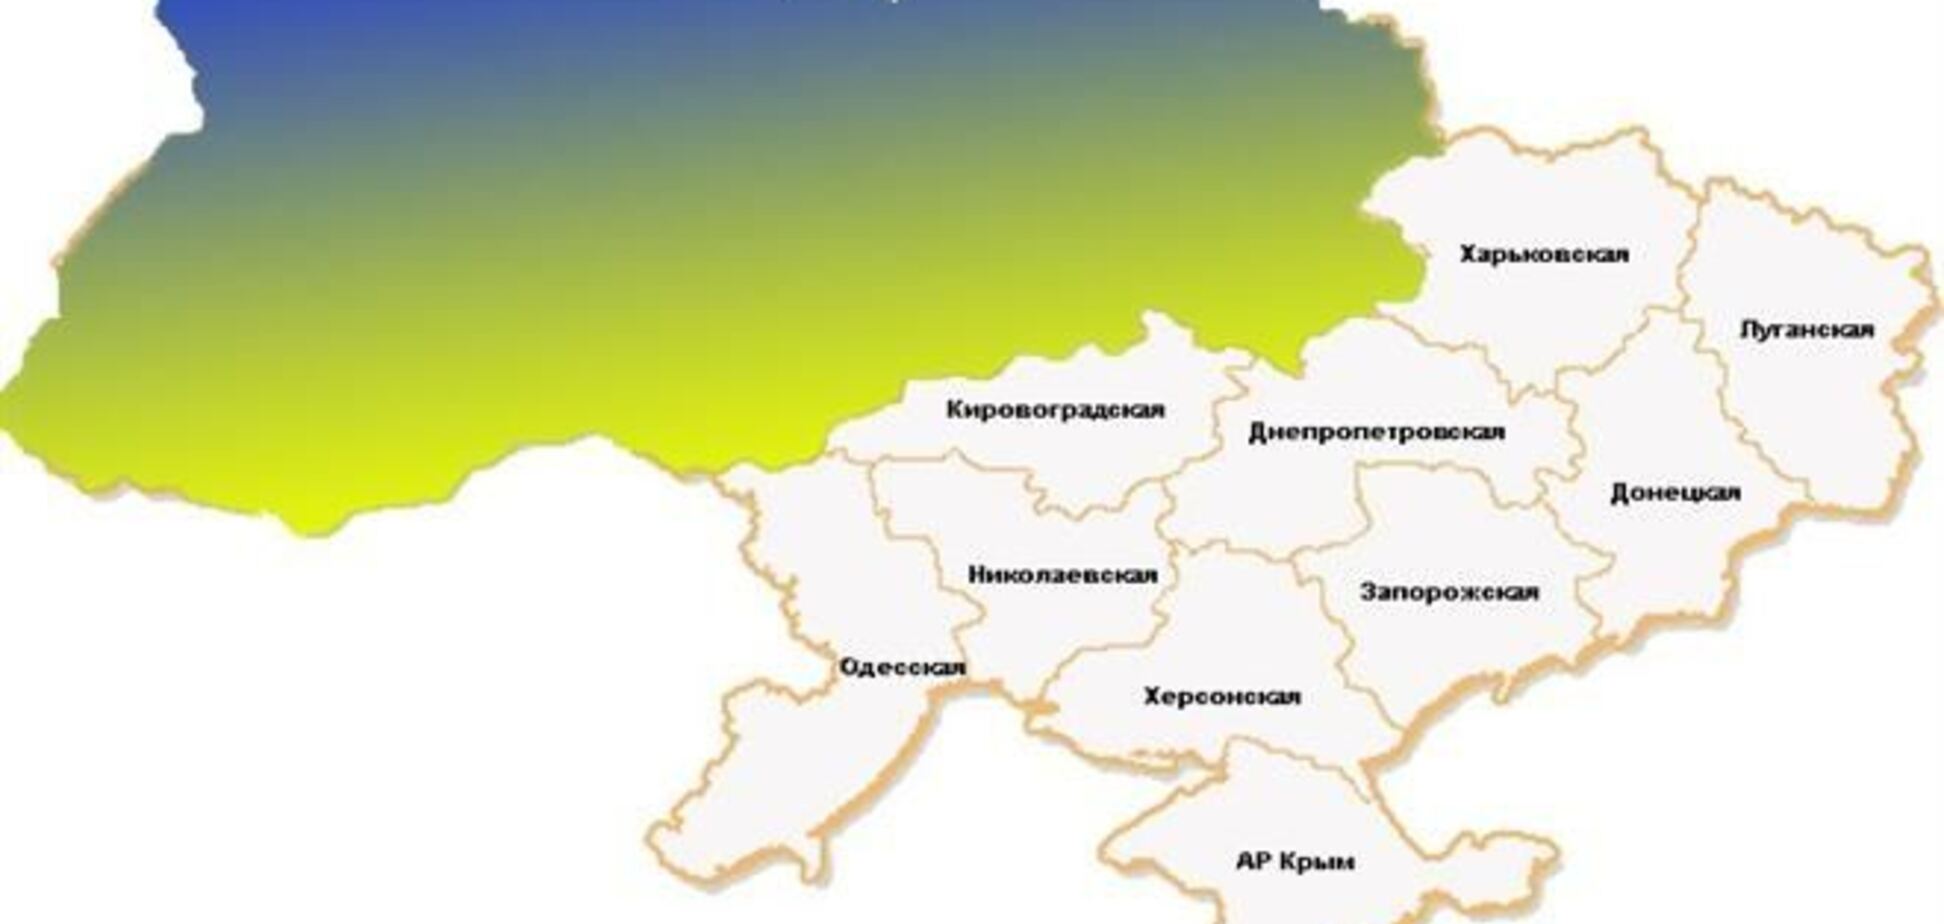 Територія протесту в Україні розширилася до 8 регіонів